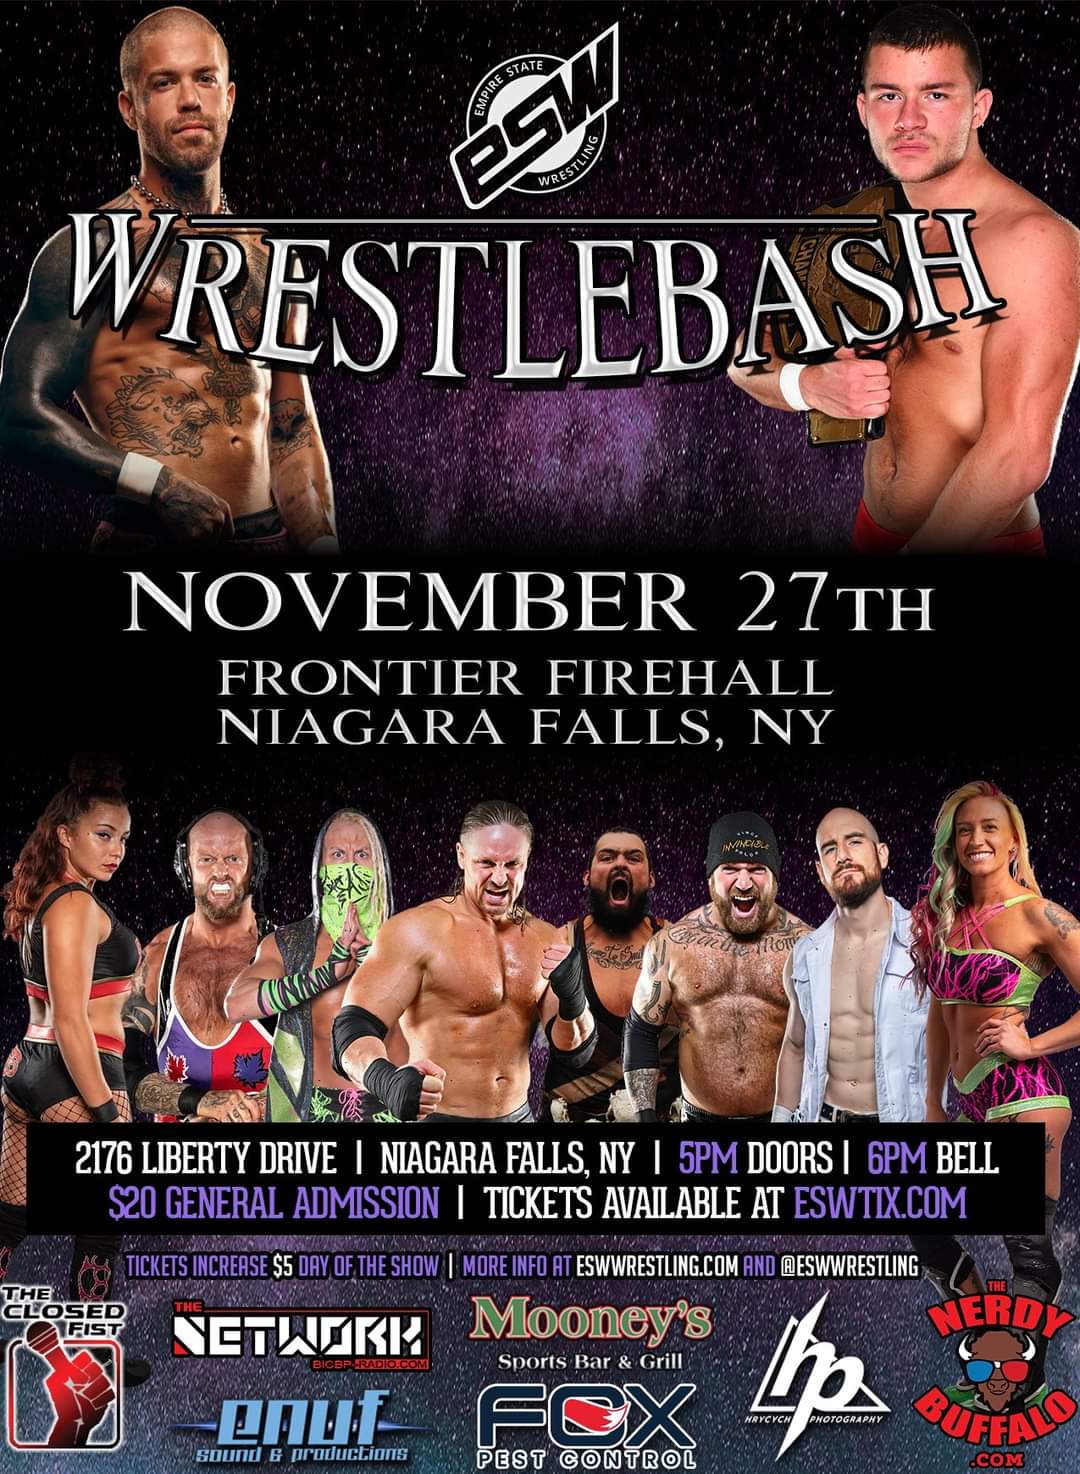 `Wrestlebash` poster courtesy of Empire State Wrestling.